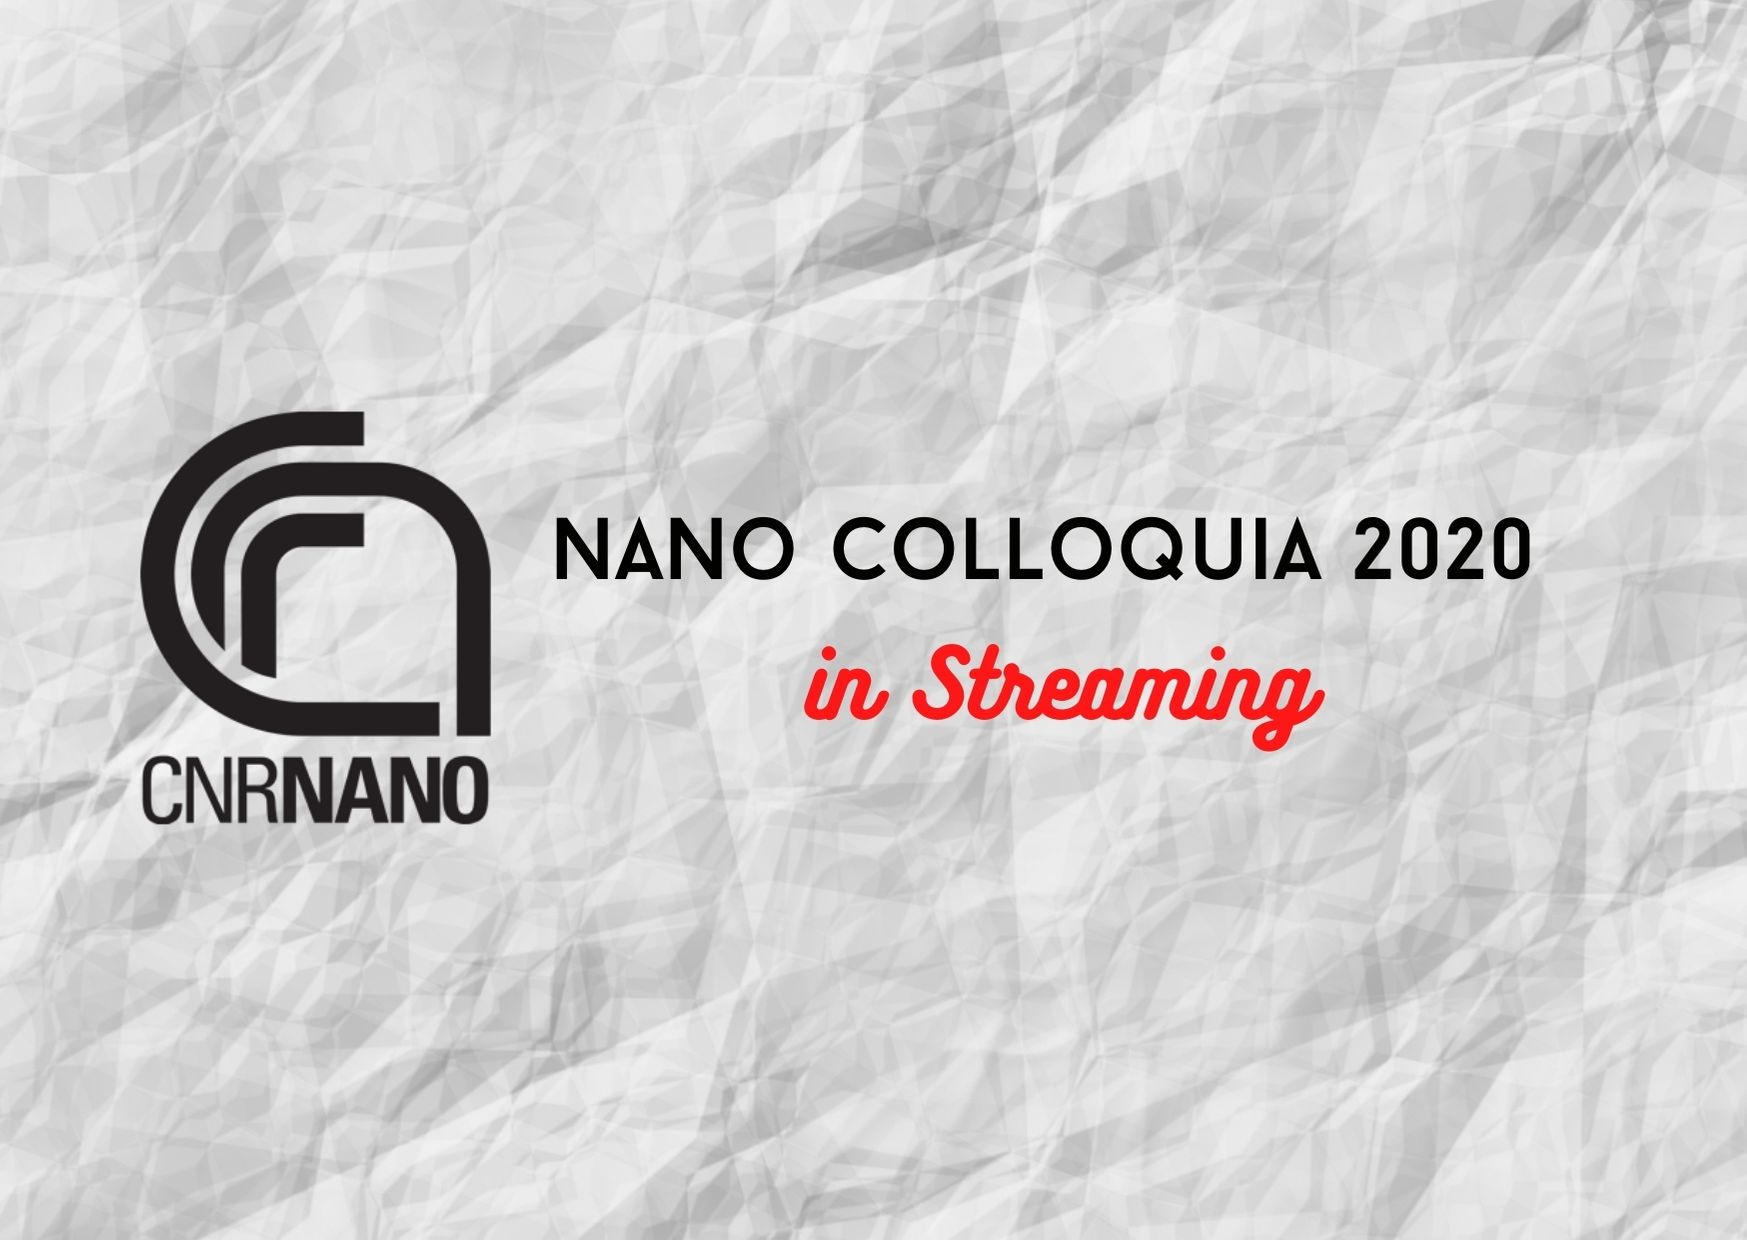 NANO Colloquia 2020 - Sergio Pezzini